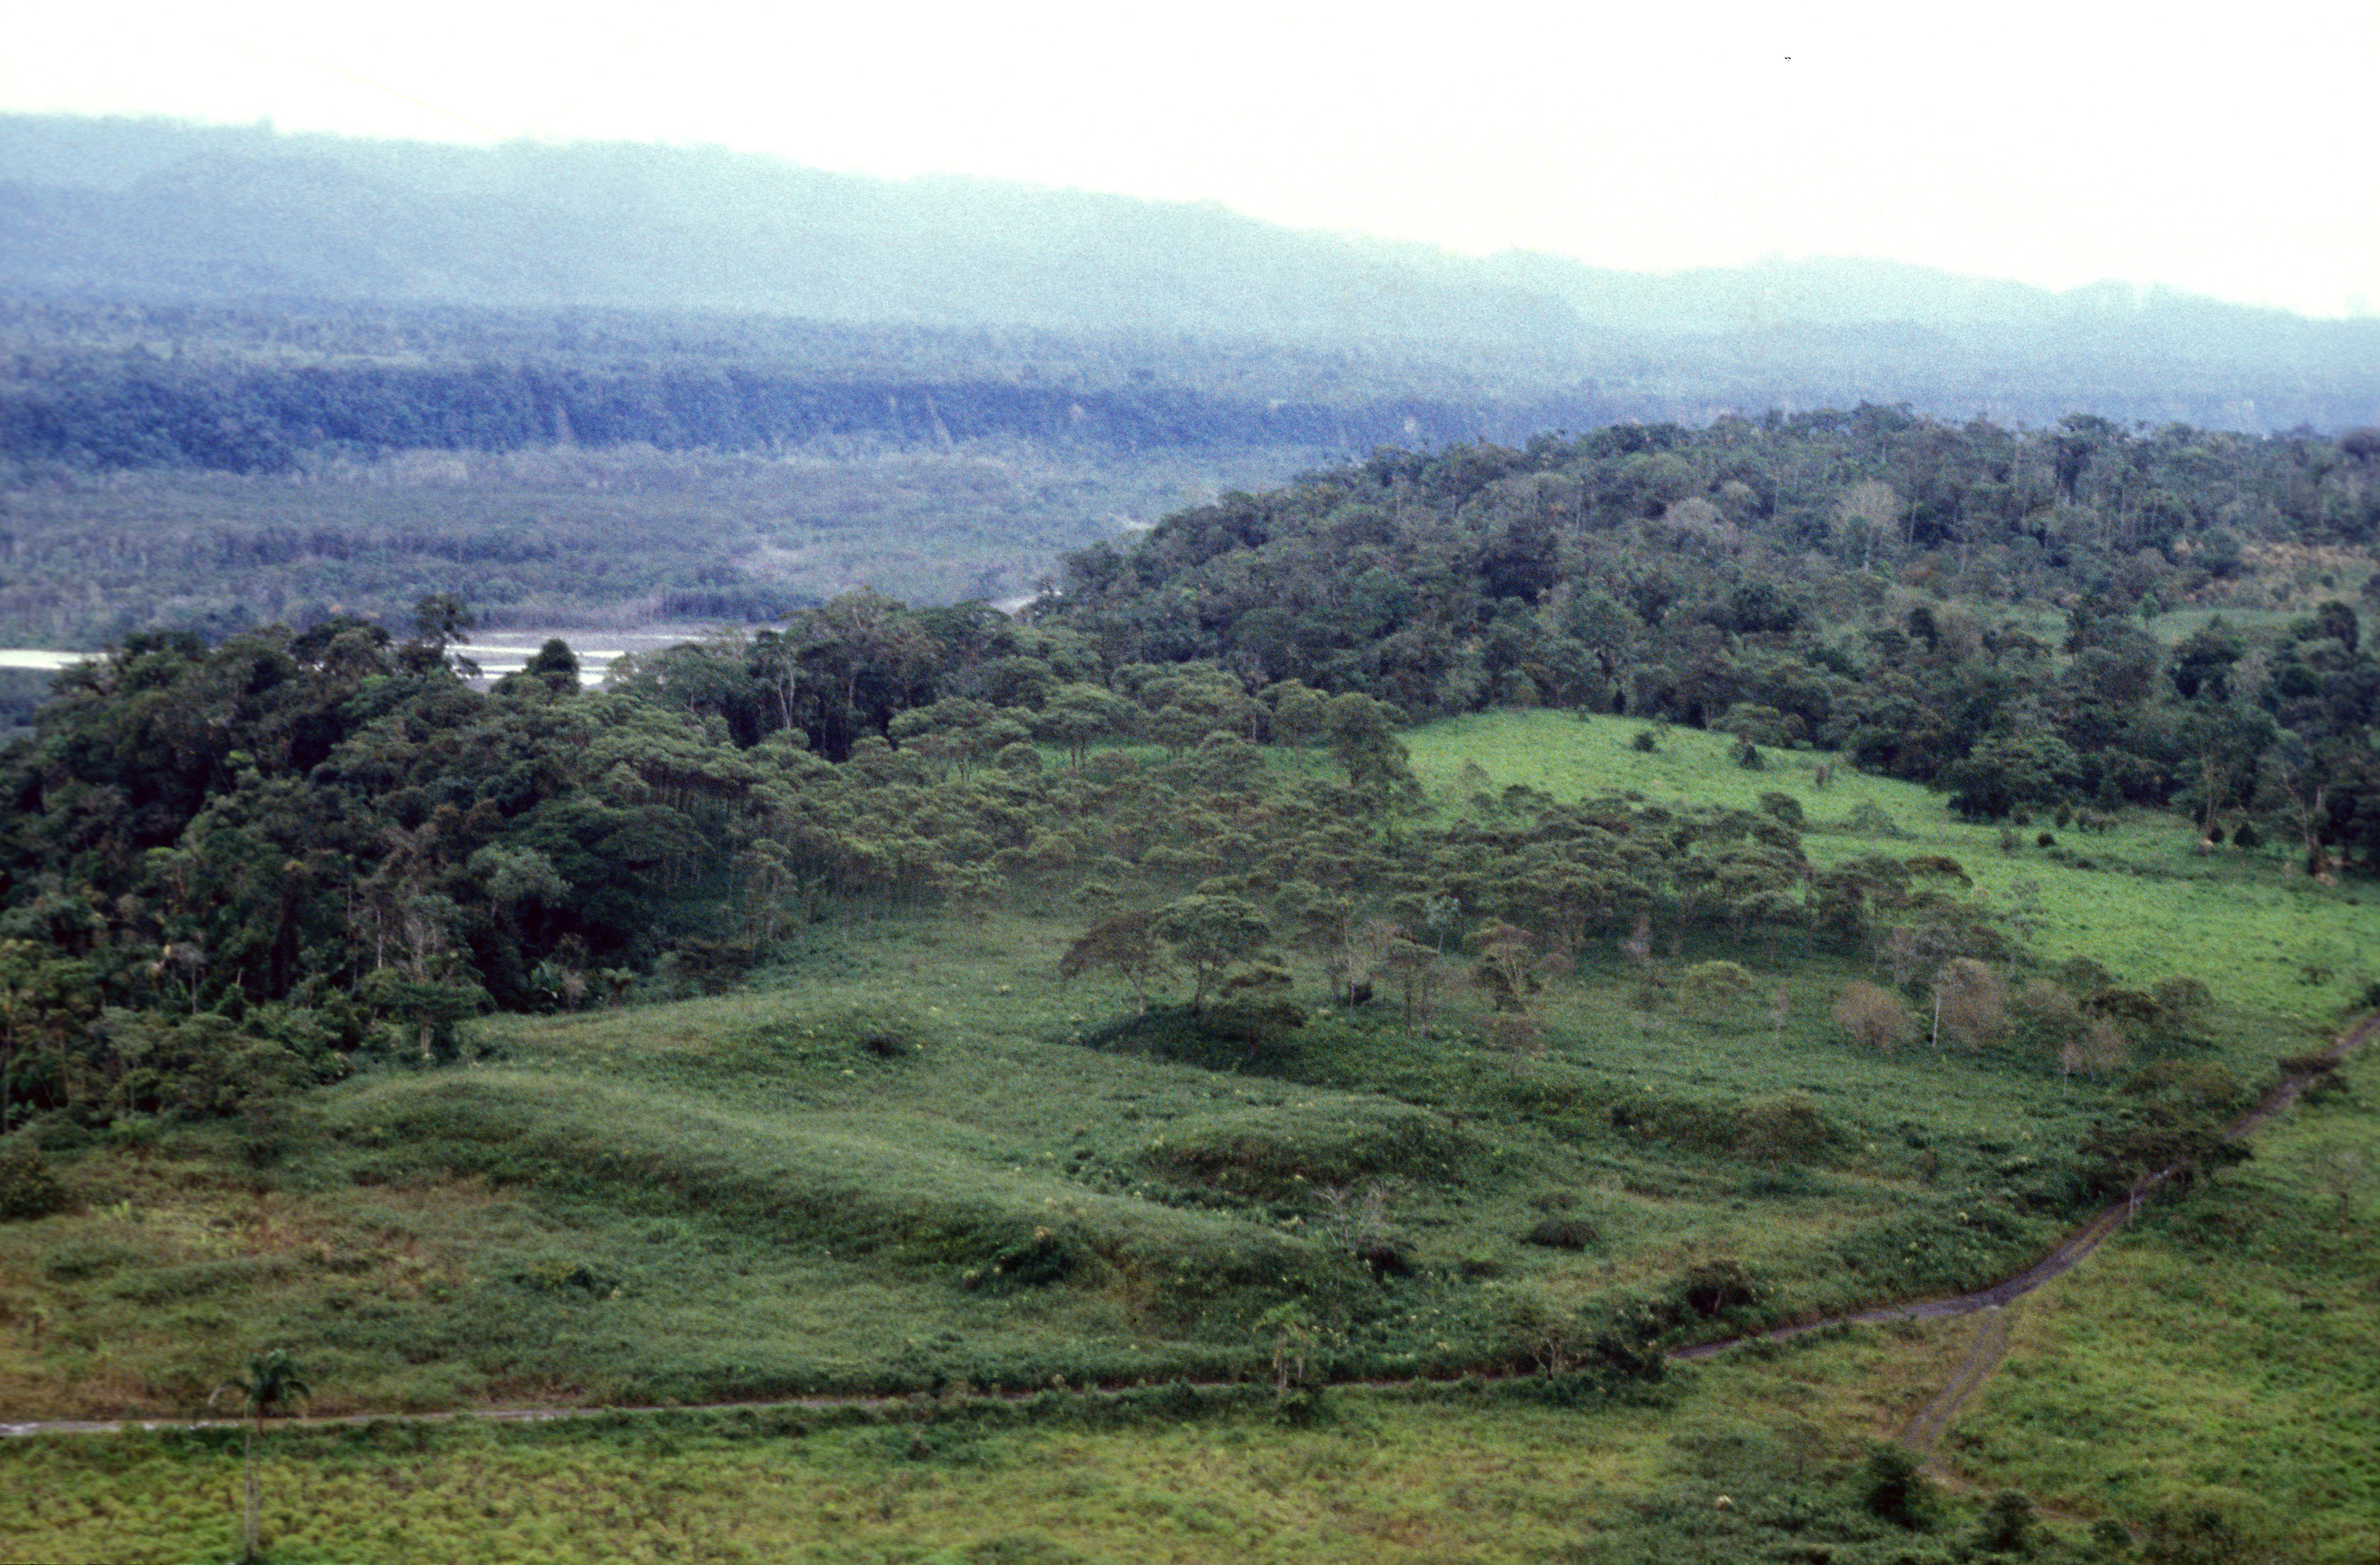 Dans la vallée de l'Upano, en Équateur, ces plates-formes en terre pour la plupart rectangulaires, sont bien d'origine humaine. Les chercheurs ont dénombré plus de 6000 structures. Stéphen Rostain